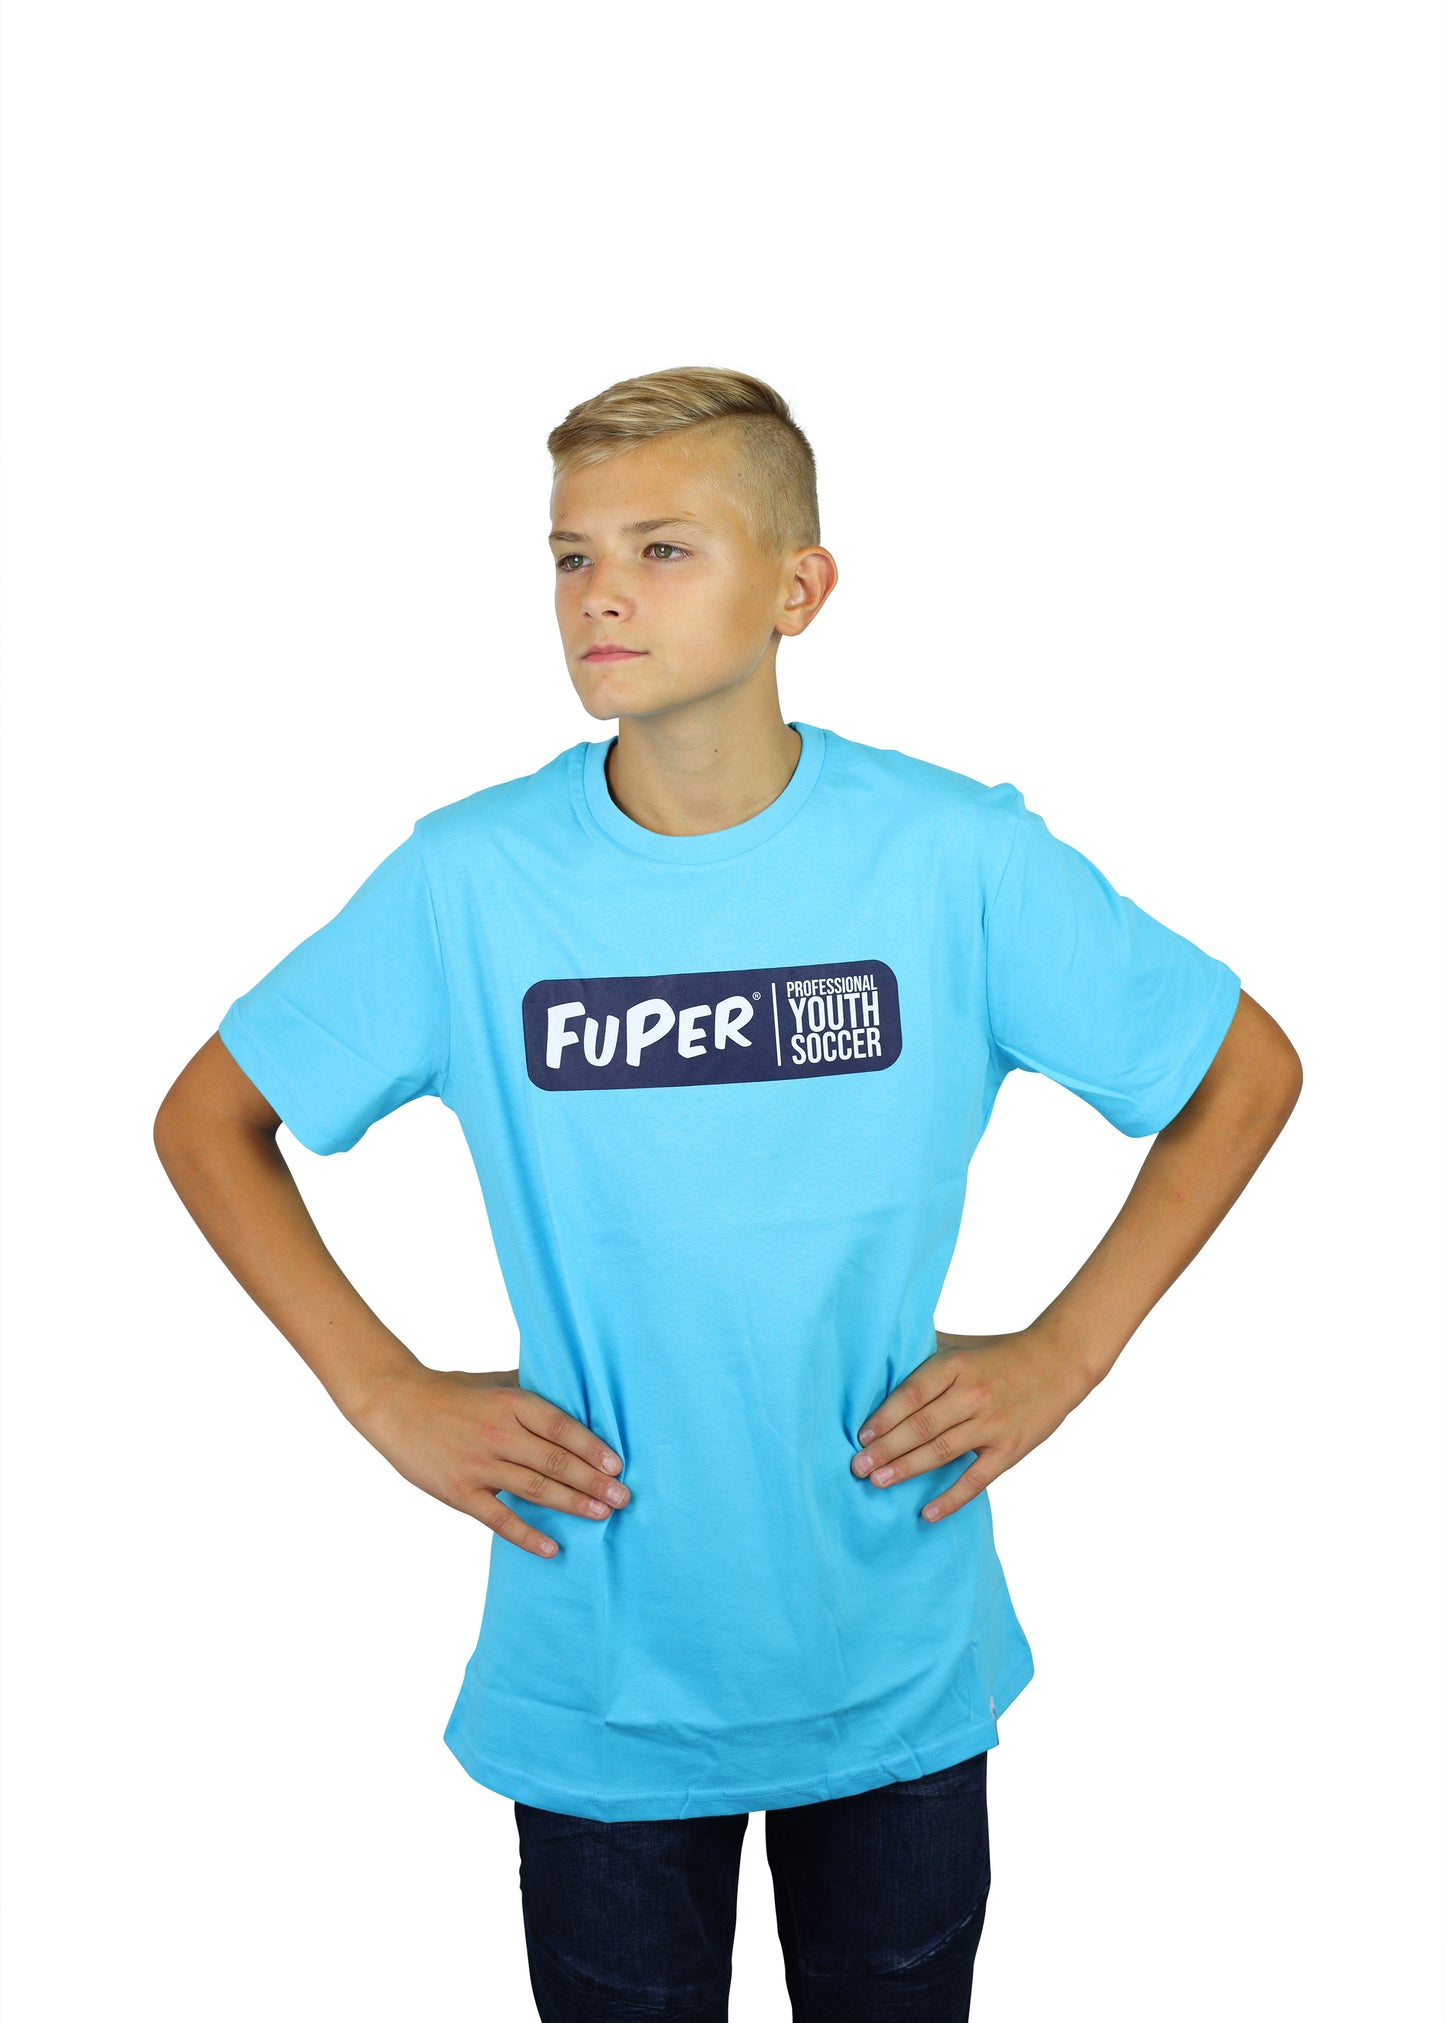 FuPer T-Shirt "Performance" Baumwolle unisex (Kinder, Frauen und Herren)